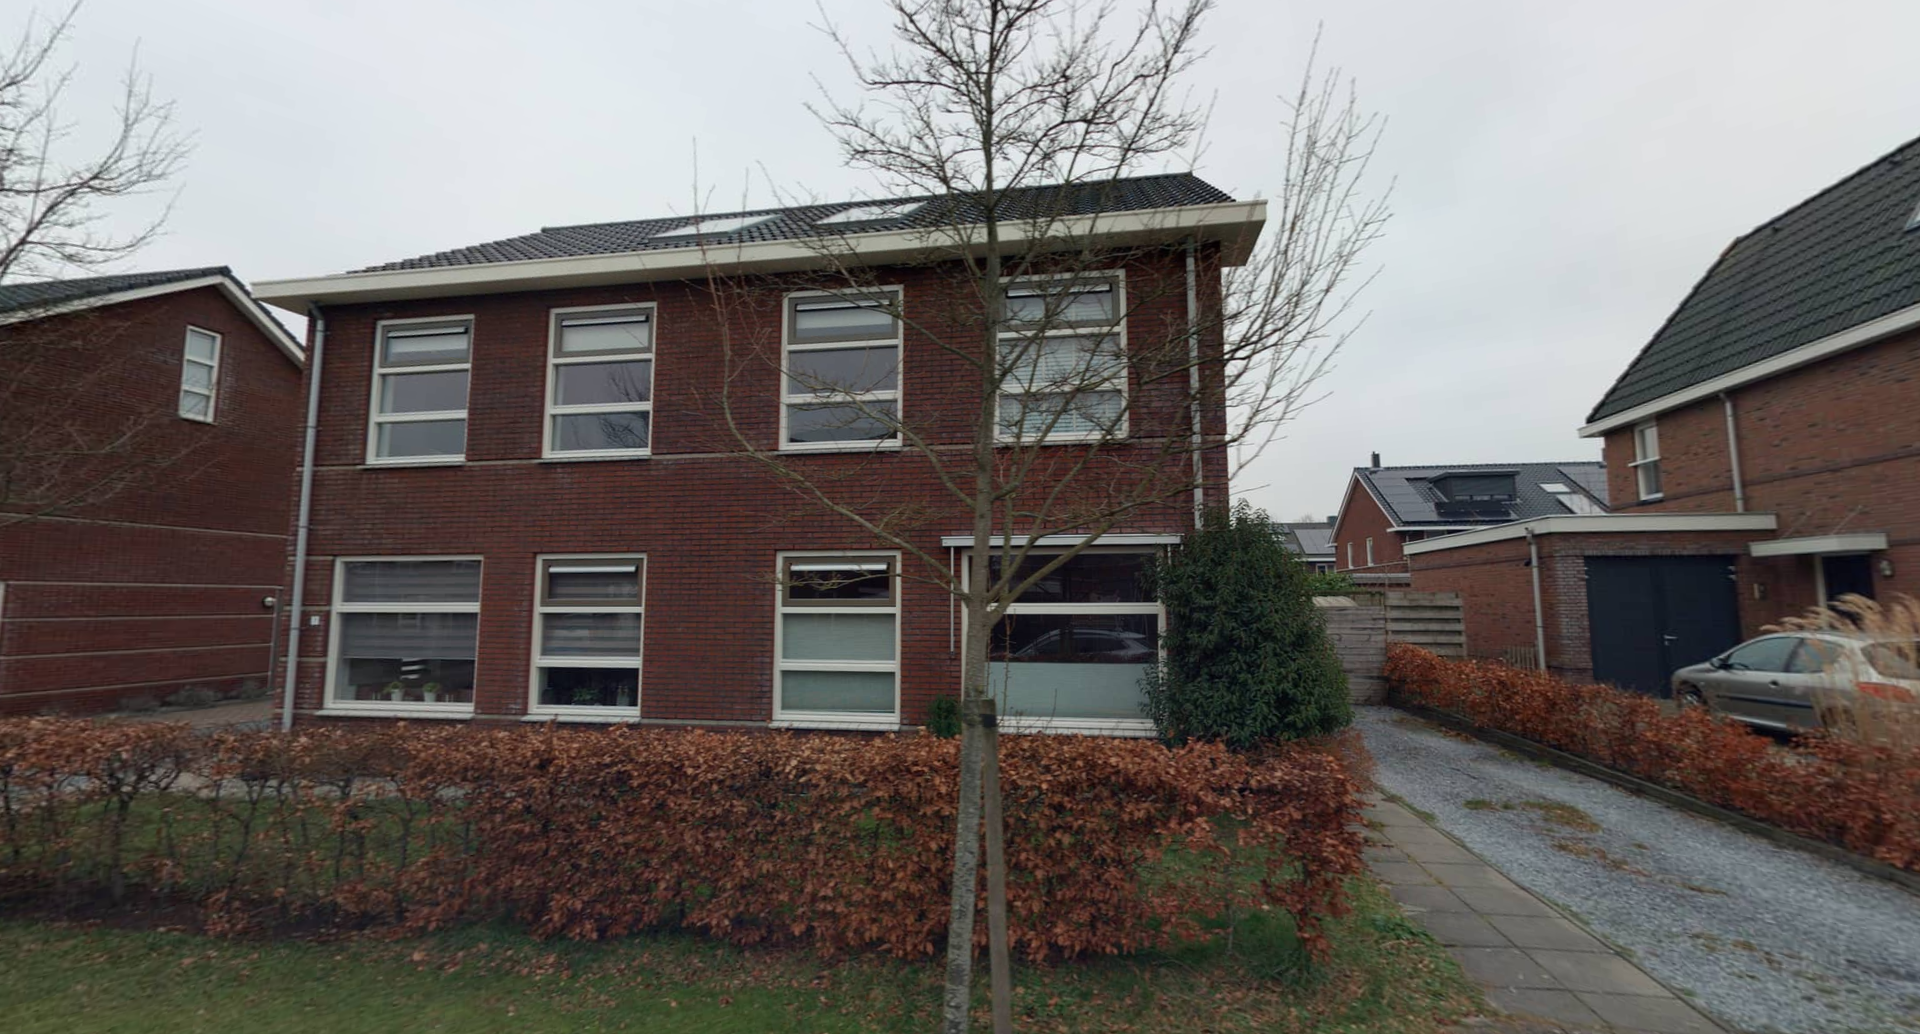 Holtdoef 5, 9302 CD Roden, Nederland